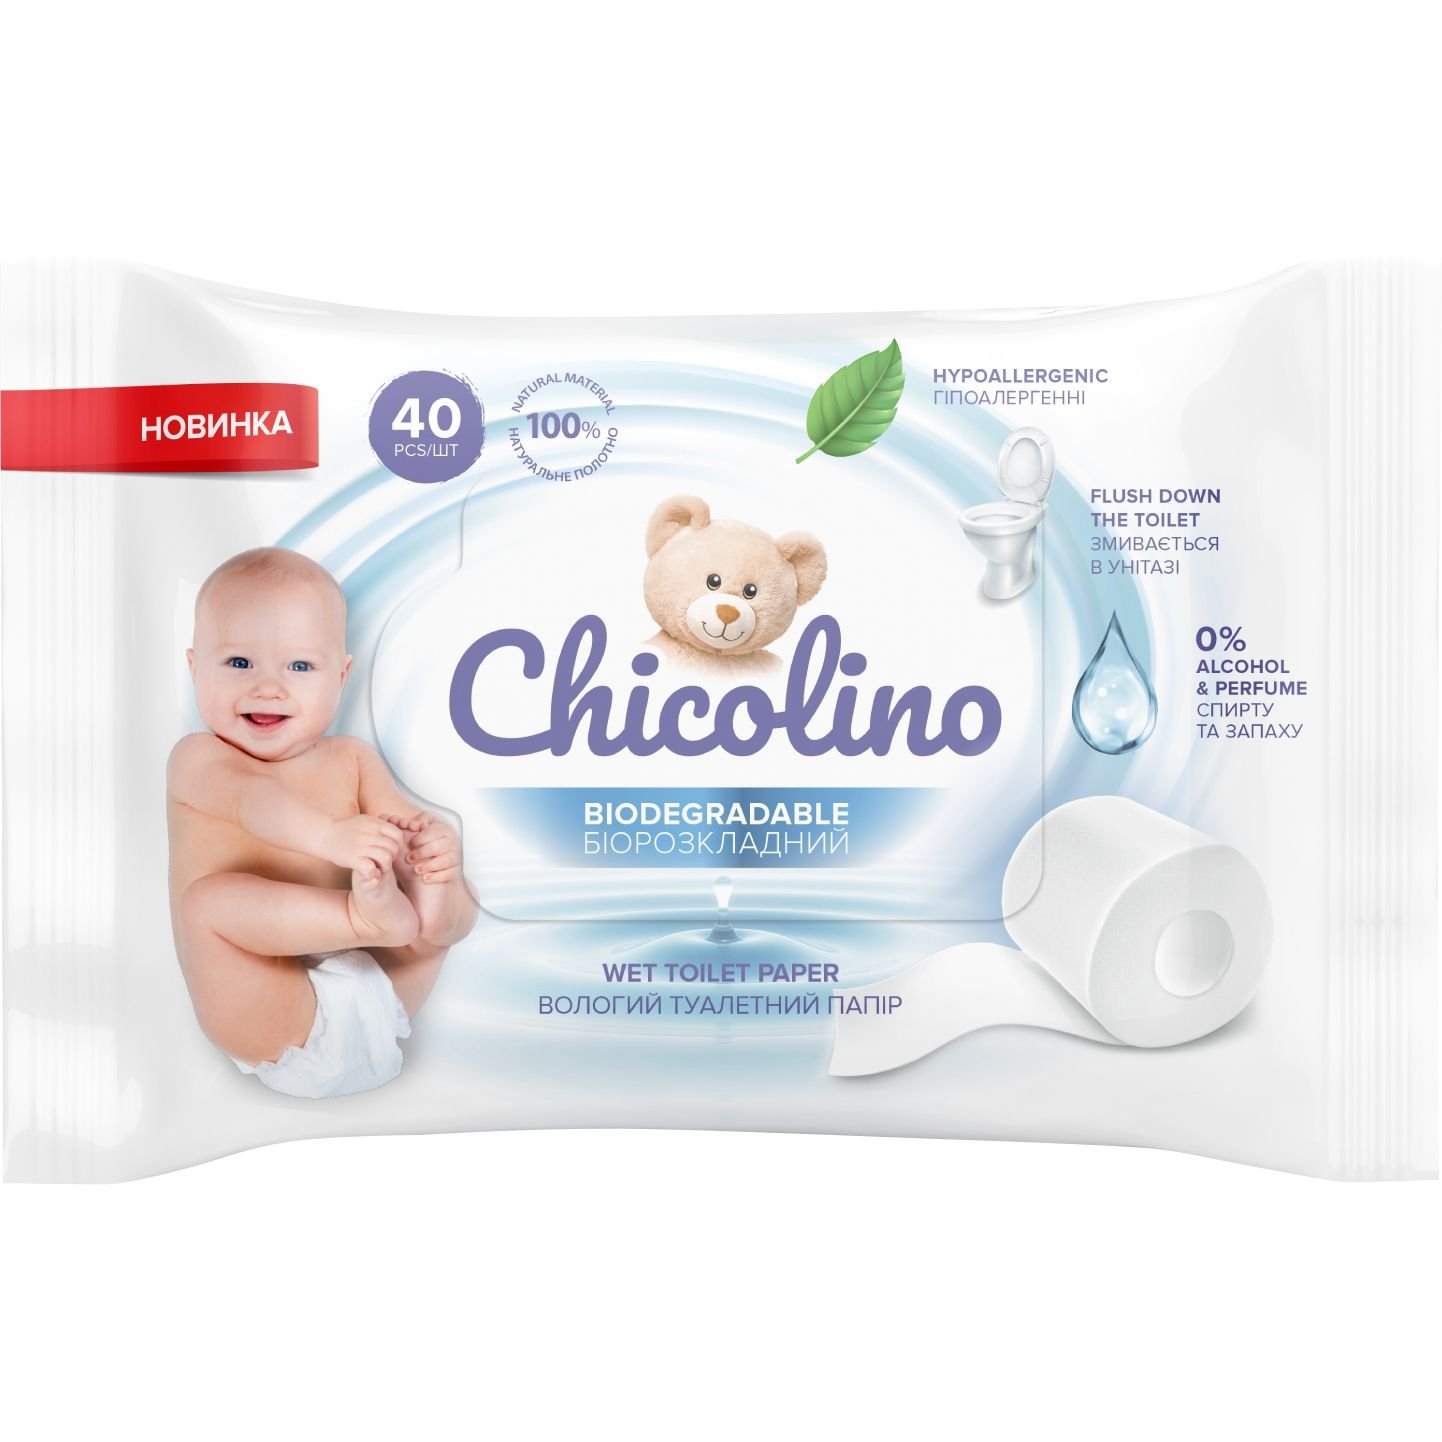 Набор биоразлагаемой влажной туалетной бумаги Chicolino для детей и взрослых, 640 шт. (16 уп. по 40 шт.) - фото 1